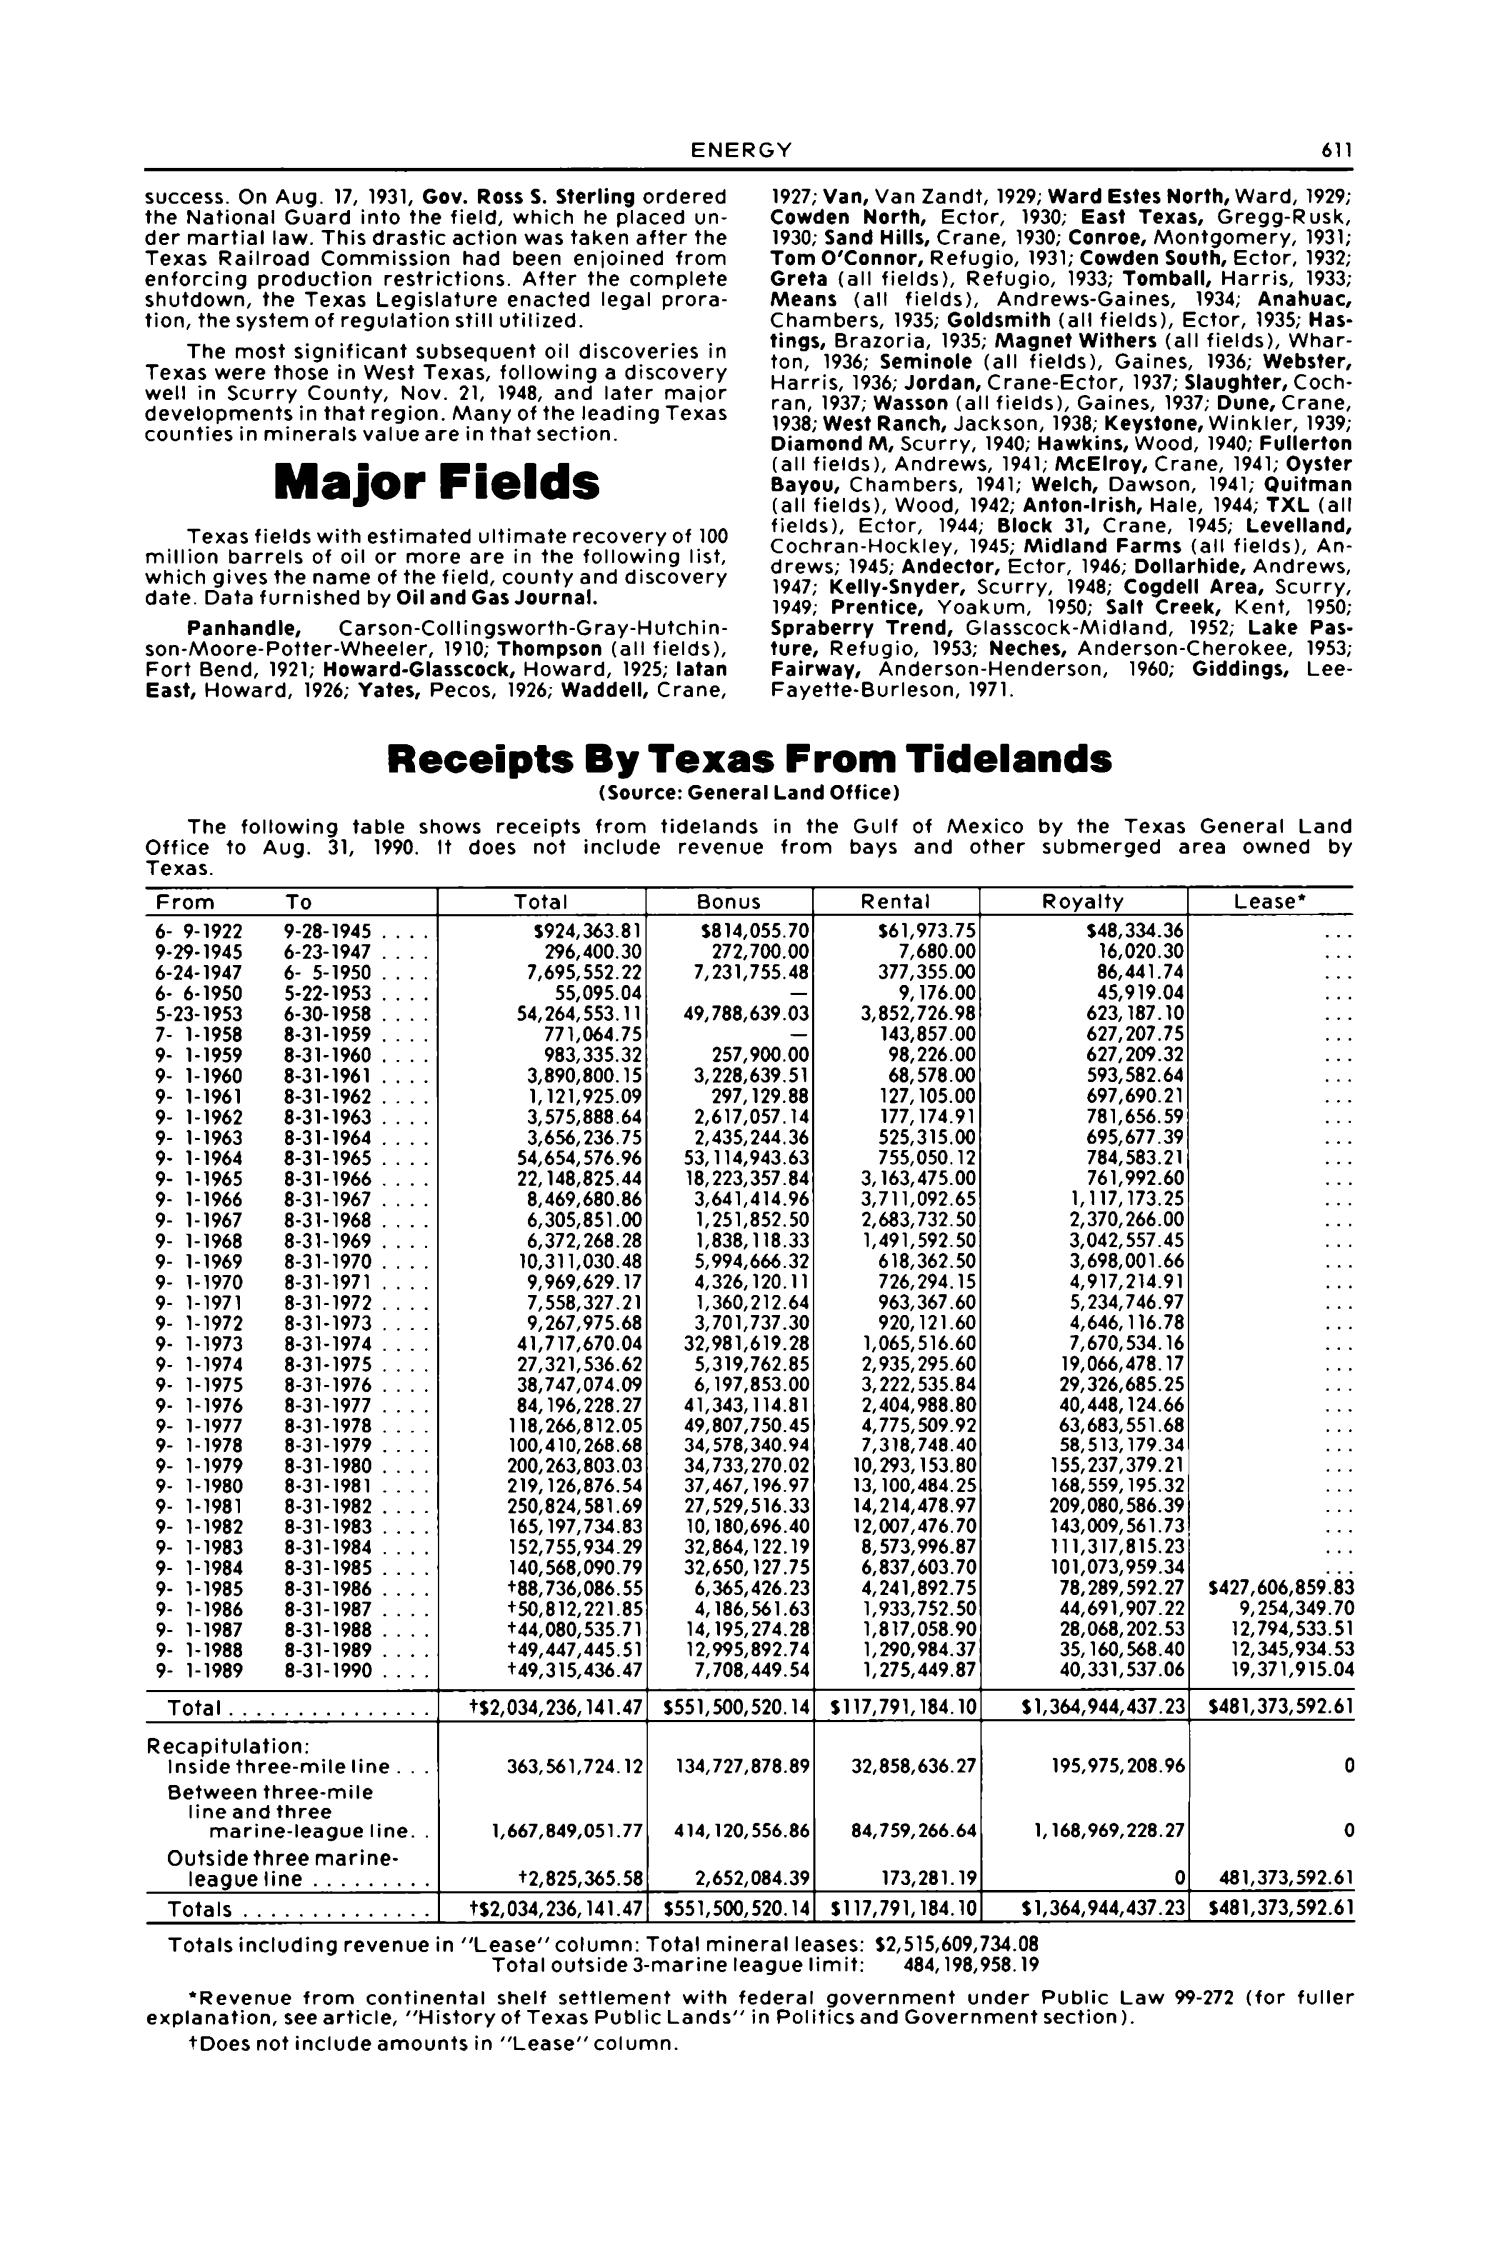 Texas Almanac, 1992-1993
                                                
                                                    611
                                                